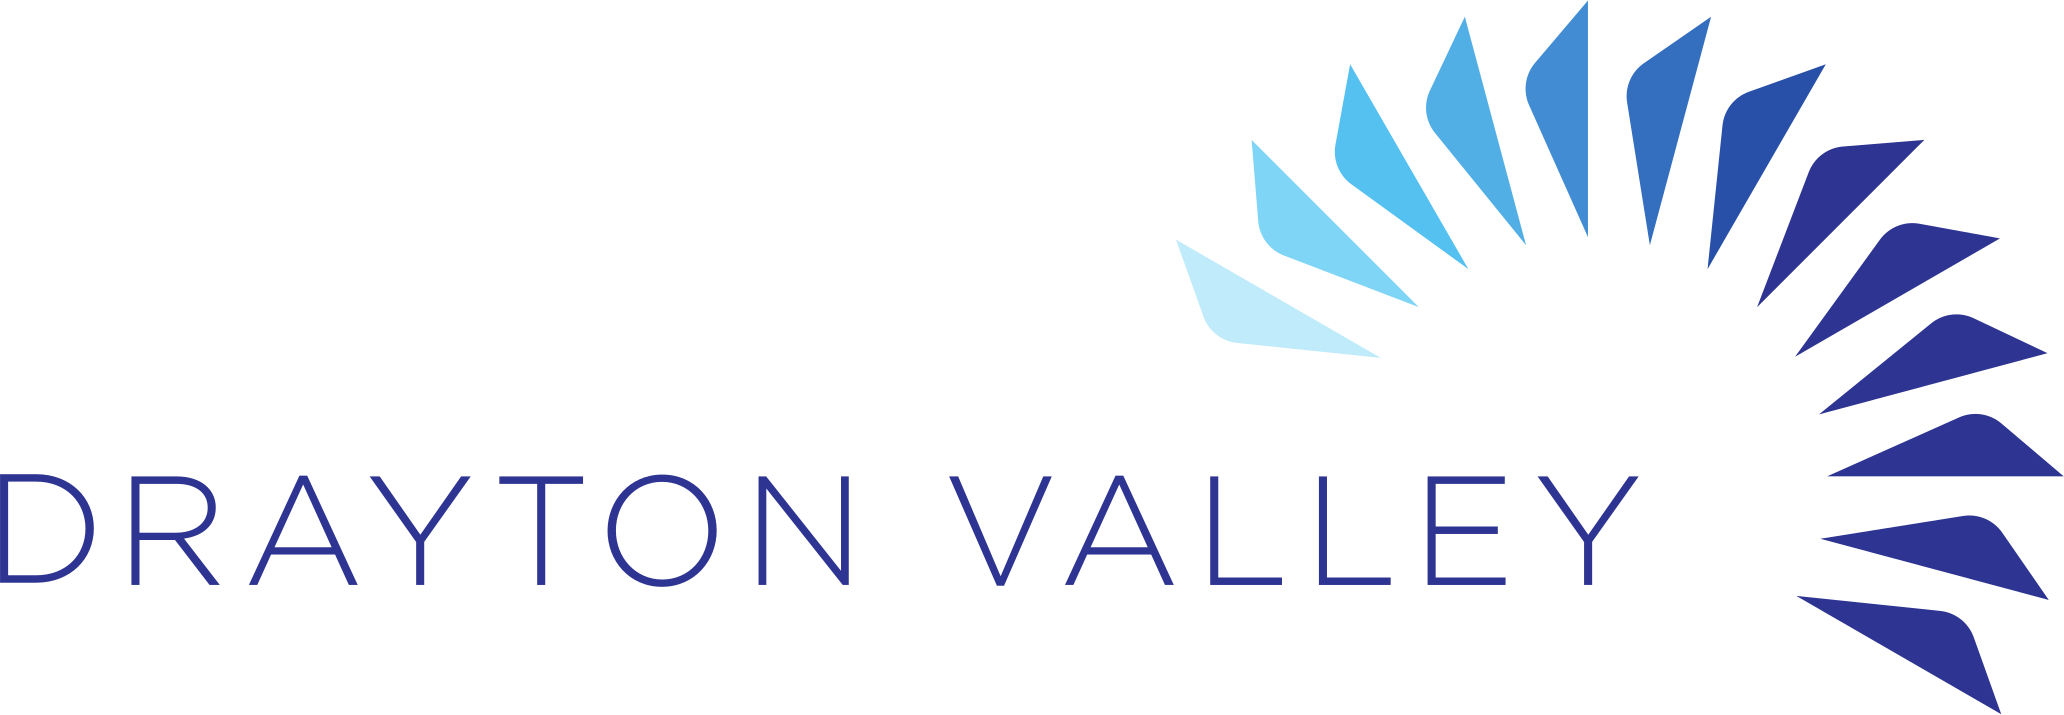 Drayton Valley - name & logo